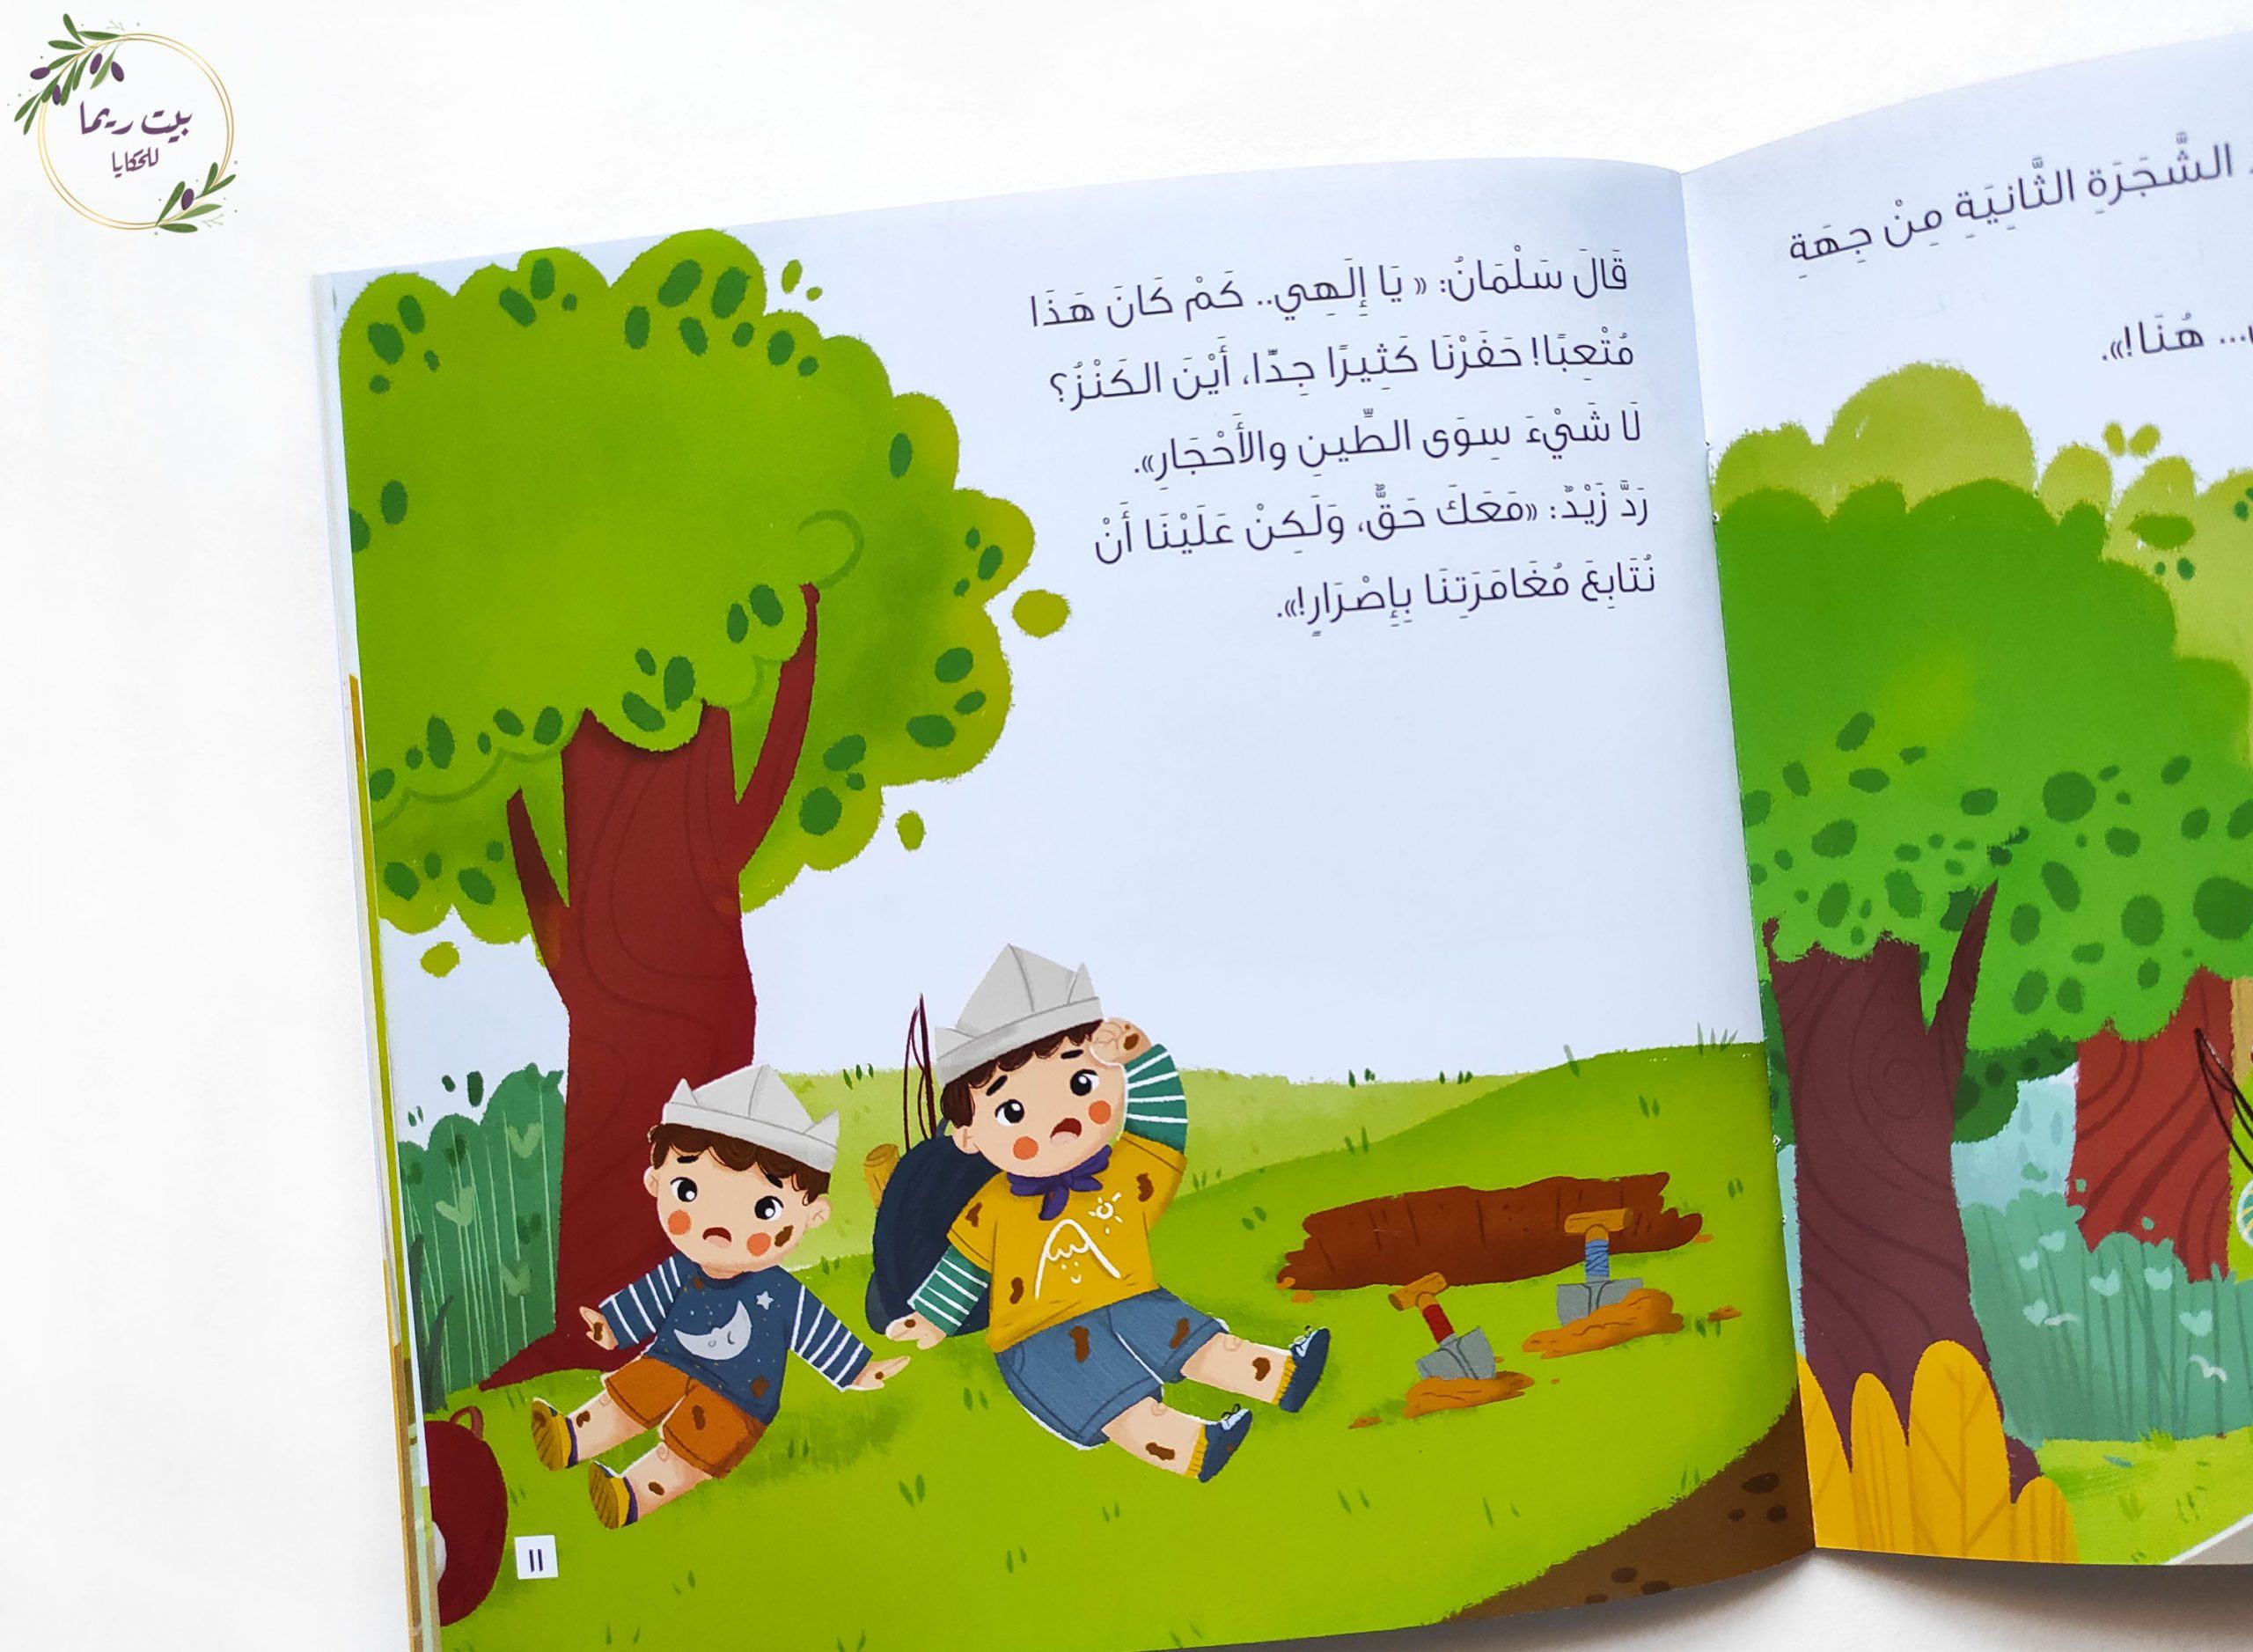 البحث عن الكنز كتب أطفال سالي خالد زكي